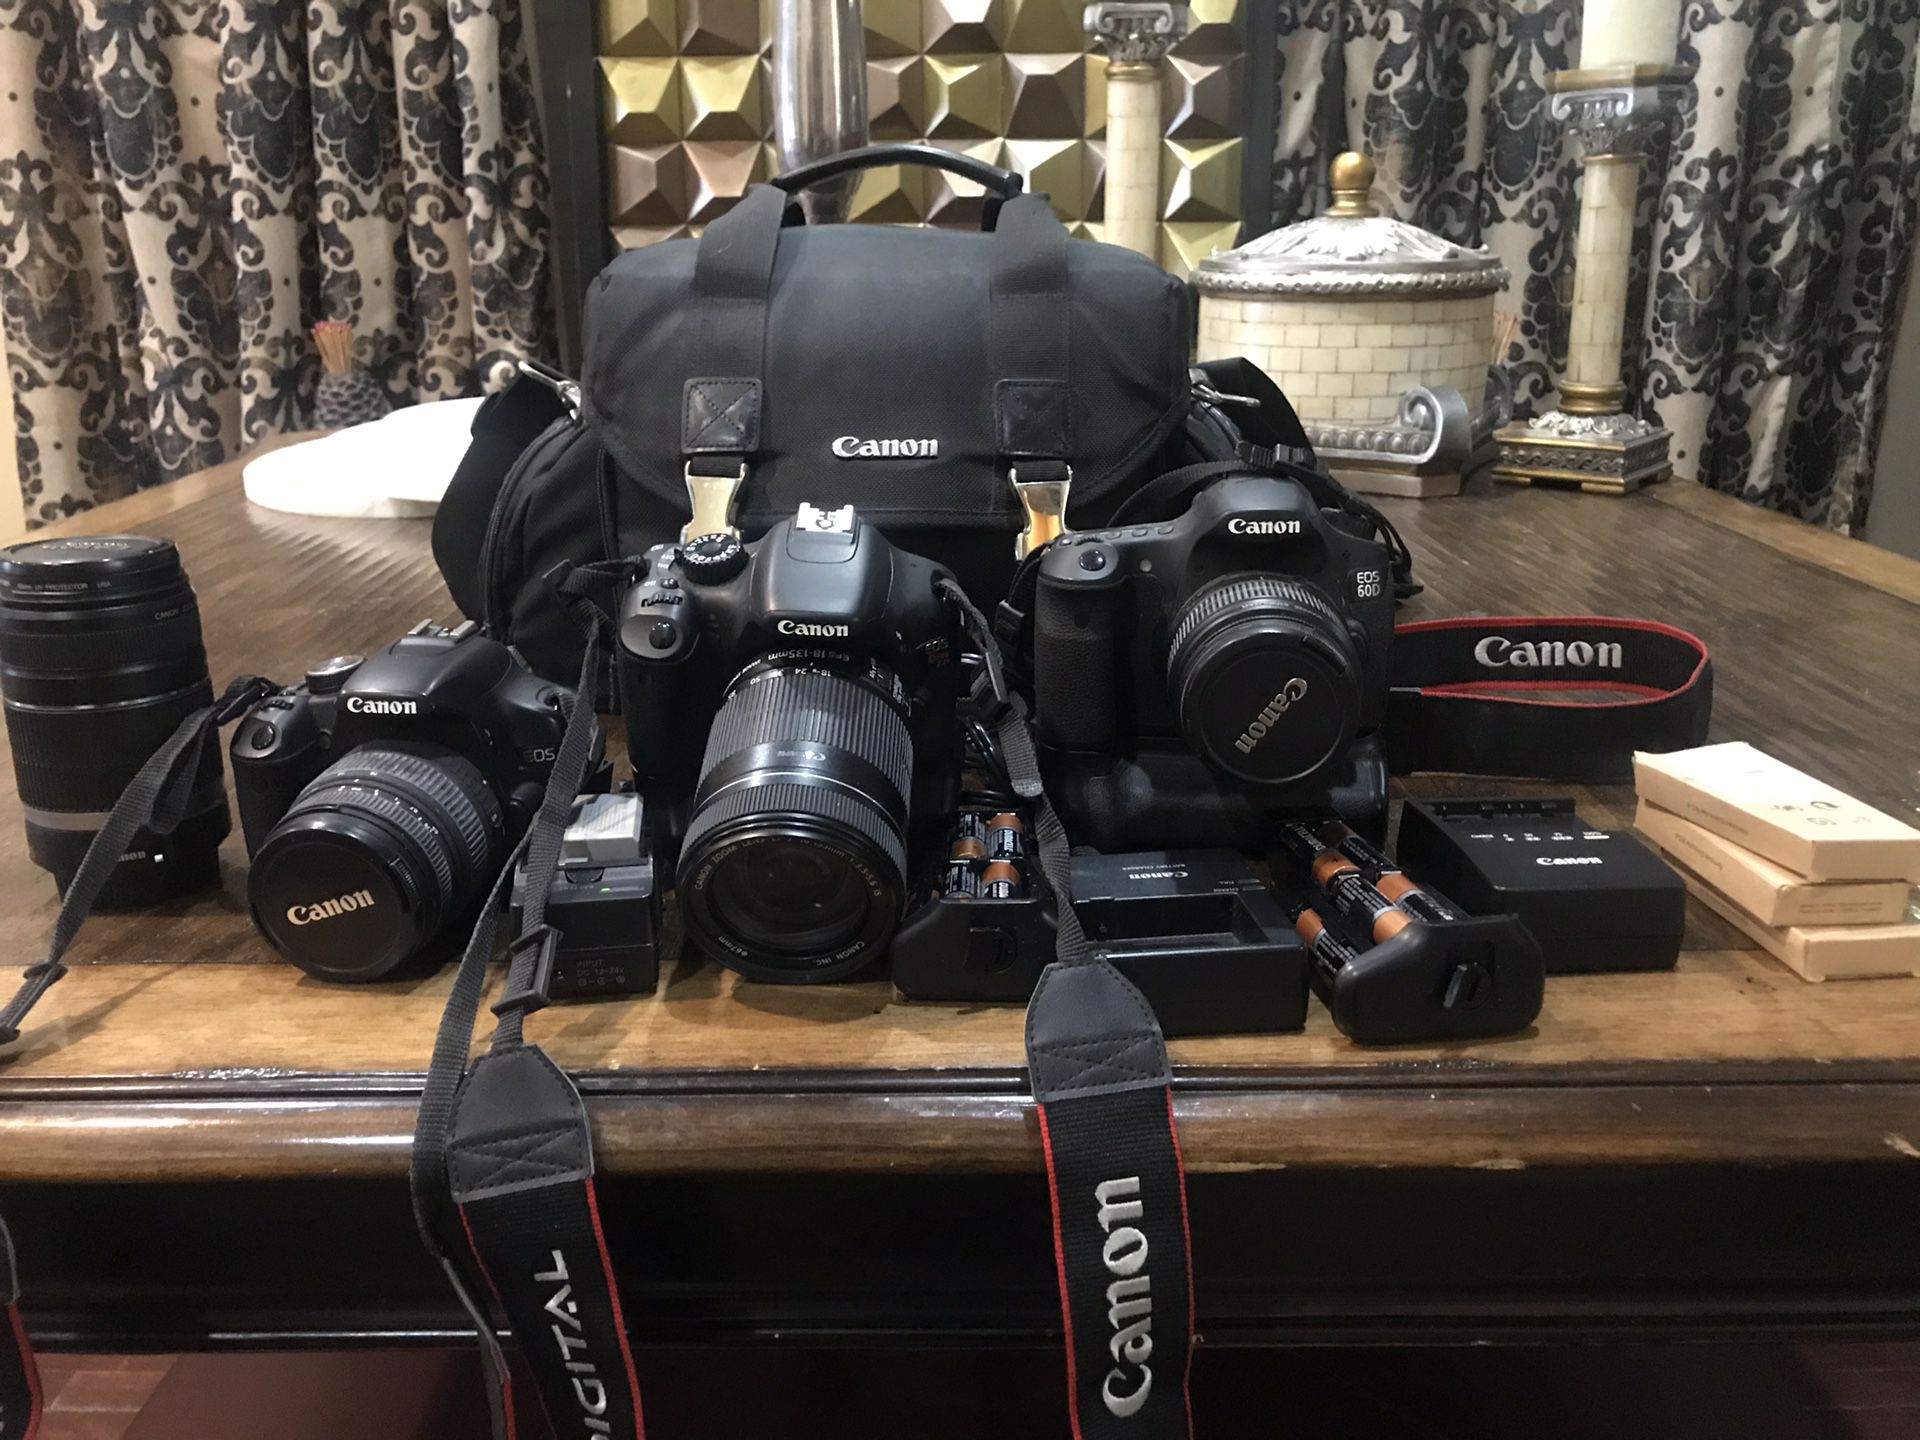 Canon cameras 60D, T2I & 500D EOS